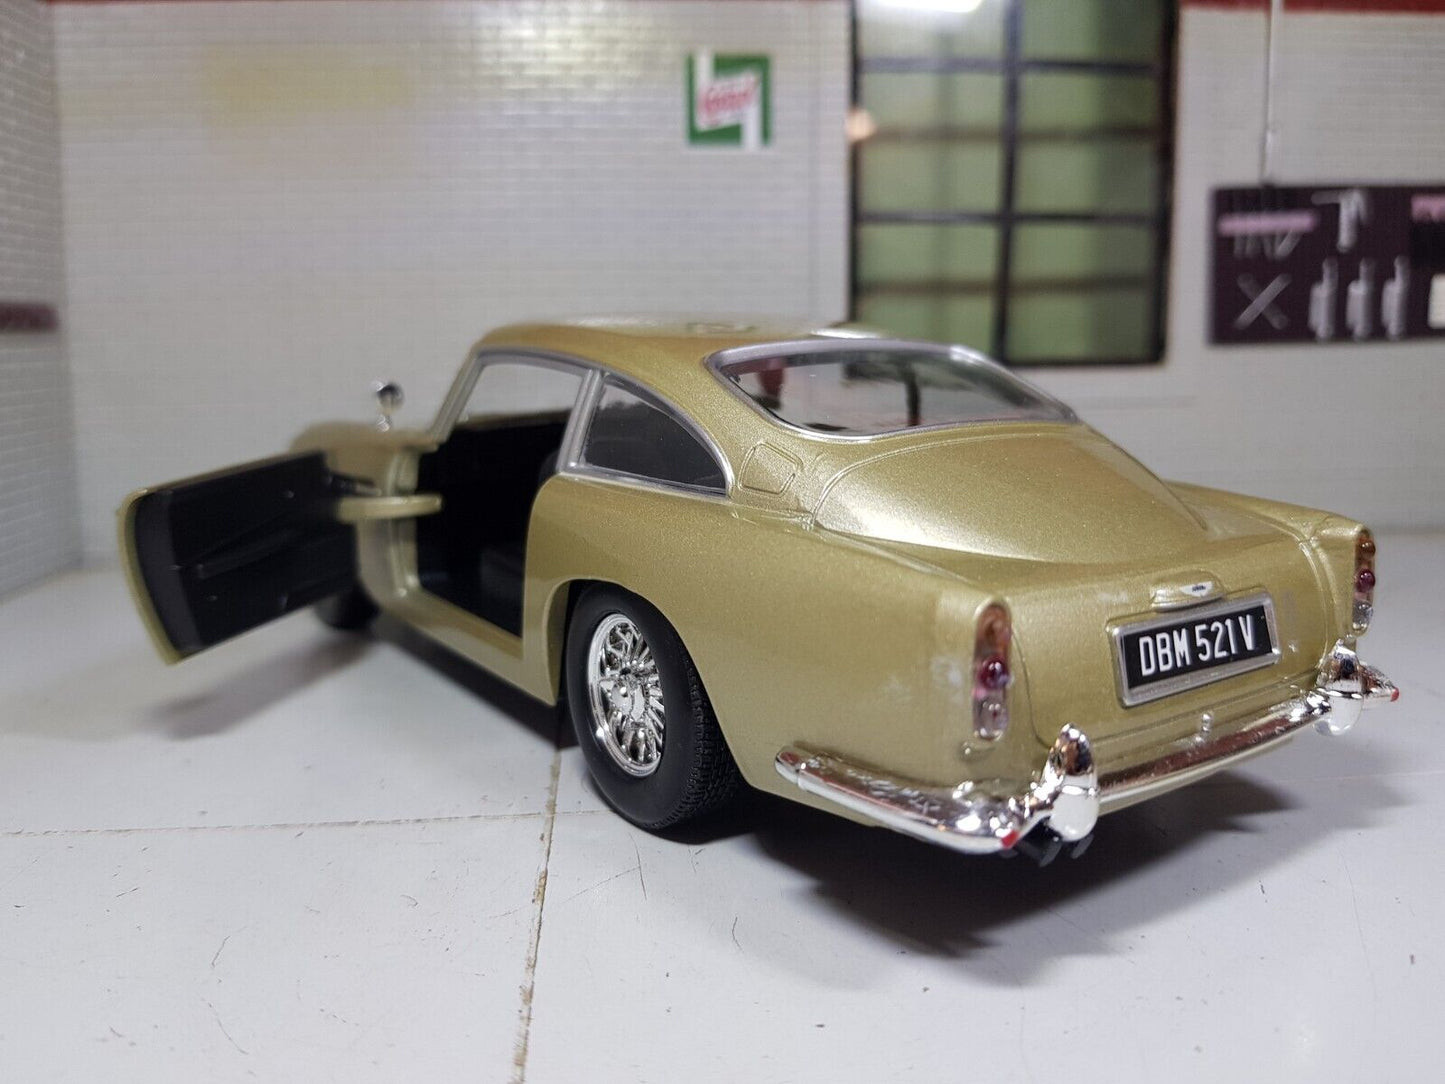 MotorMax - Voiture miniature - Aston Martin DB5 1963 - verte - 19